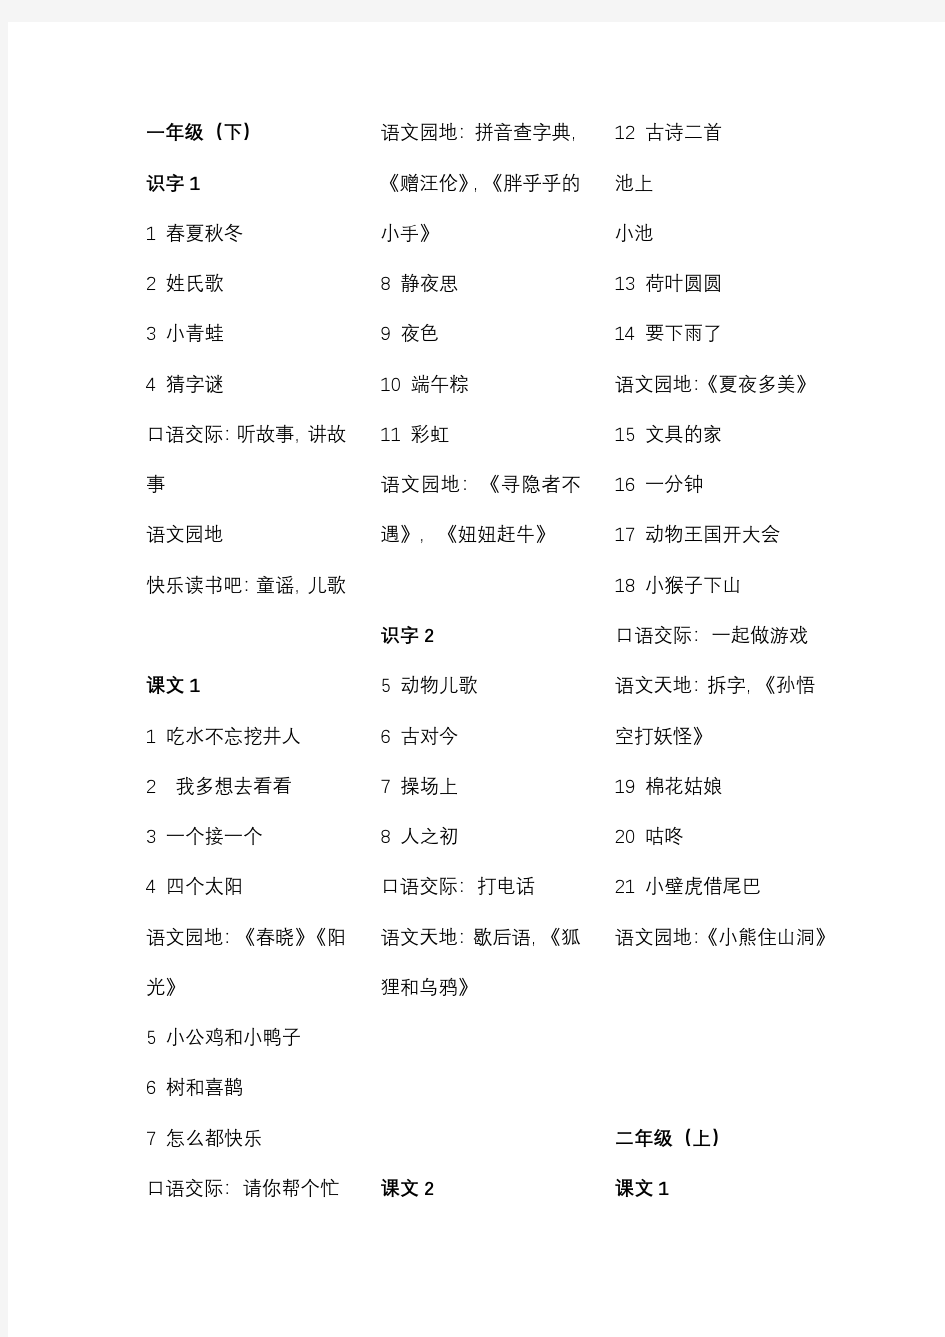 上海语文各年级教材目录(1-5非全)